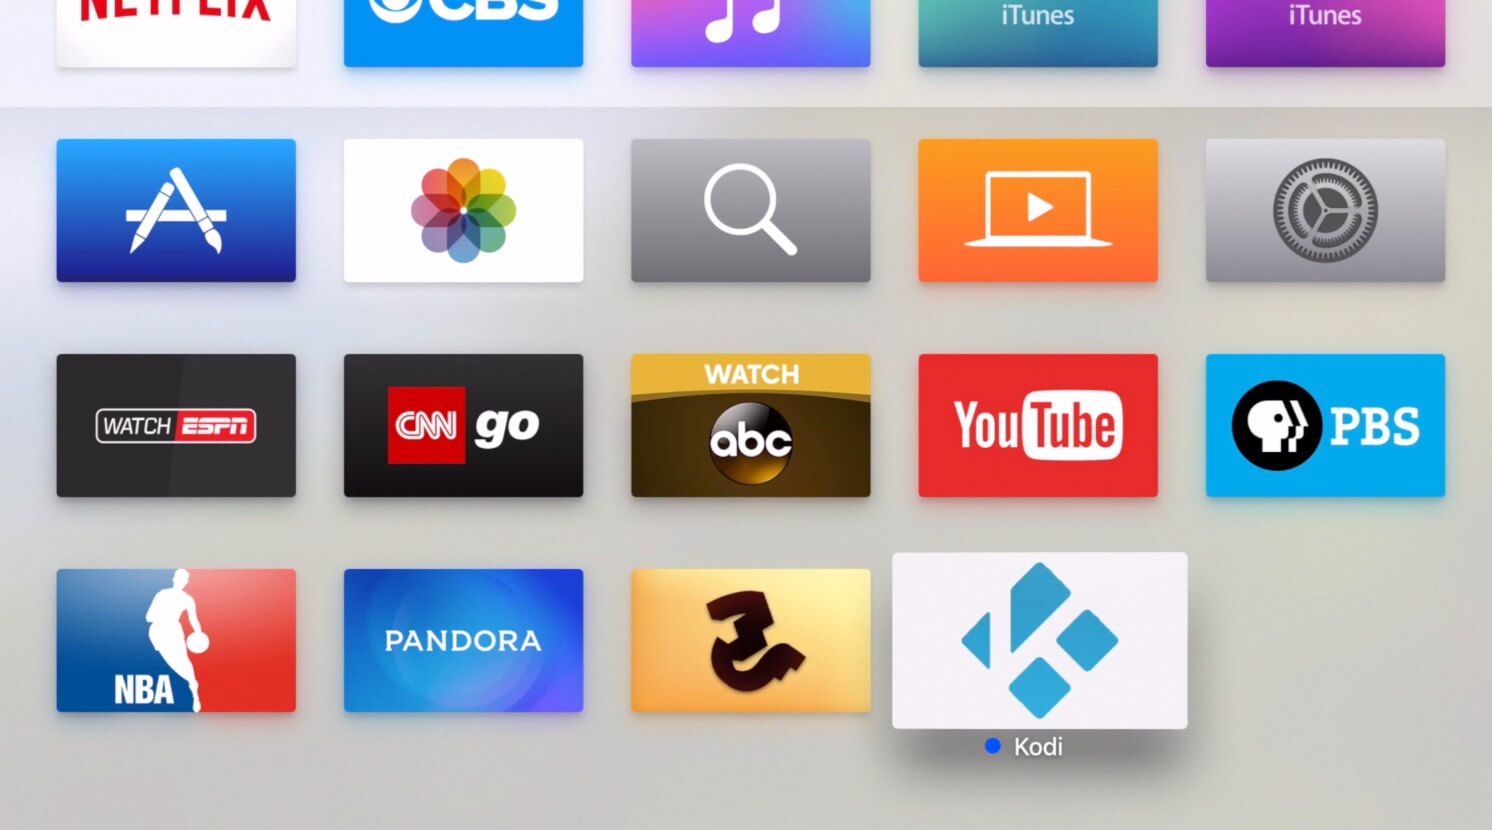 Kodi for Apple TV